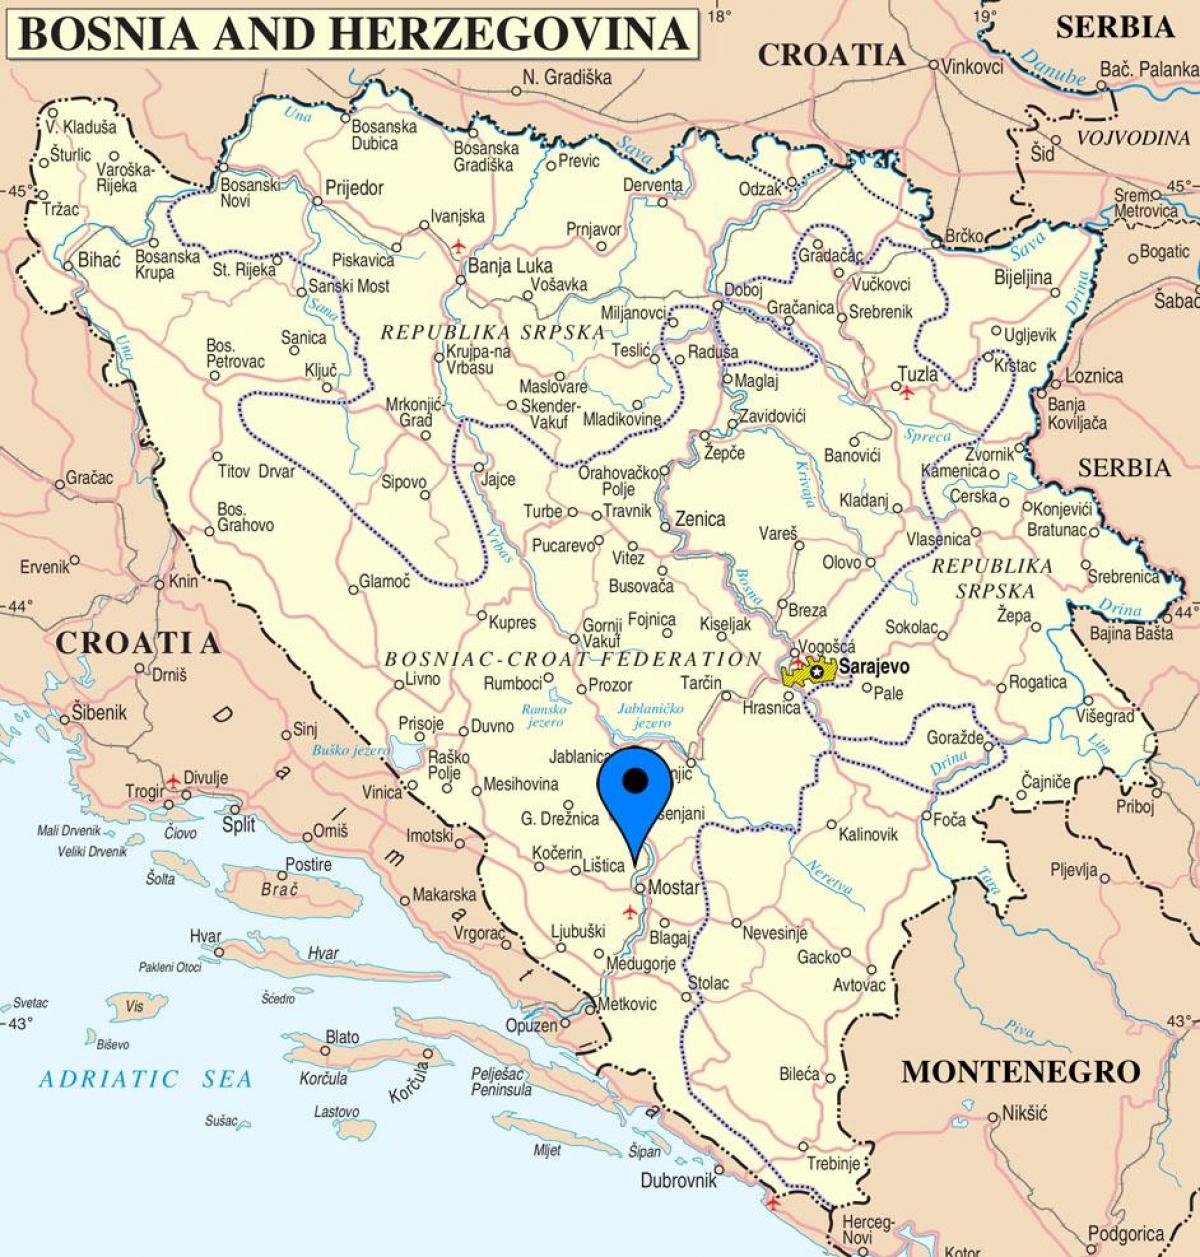 แผนที่ของ mostar บอสเนียเฮอร์